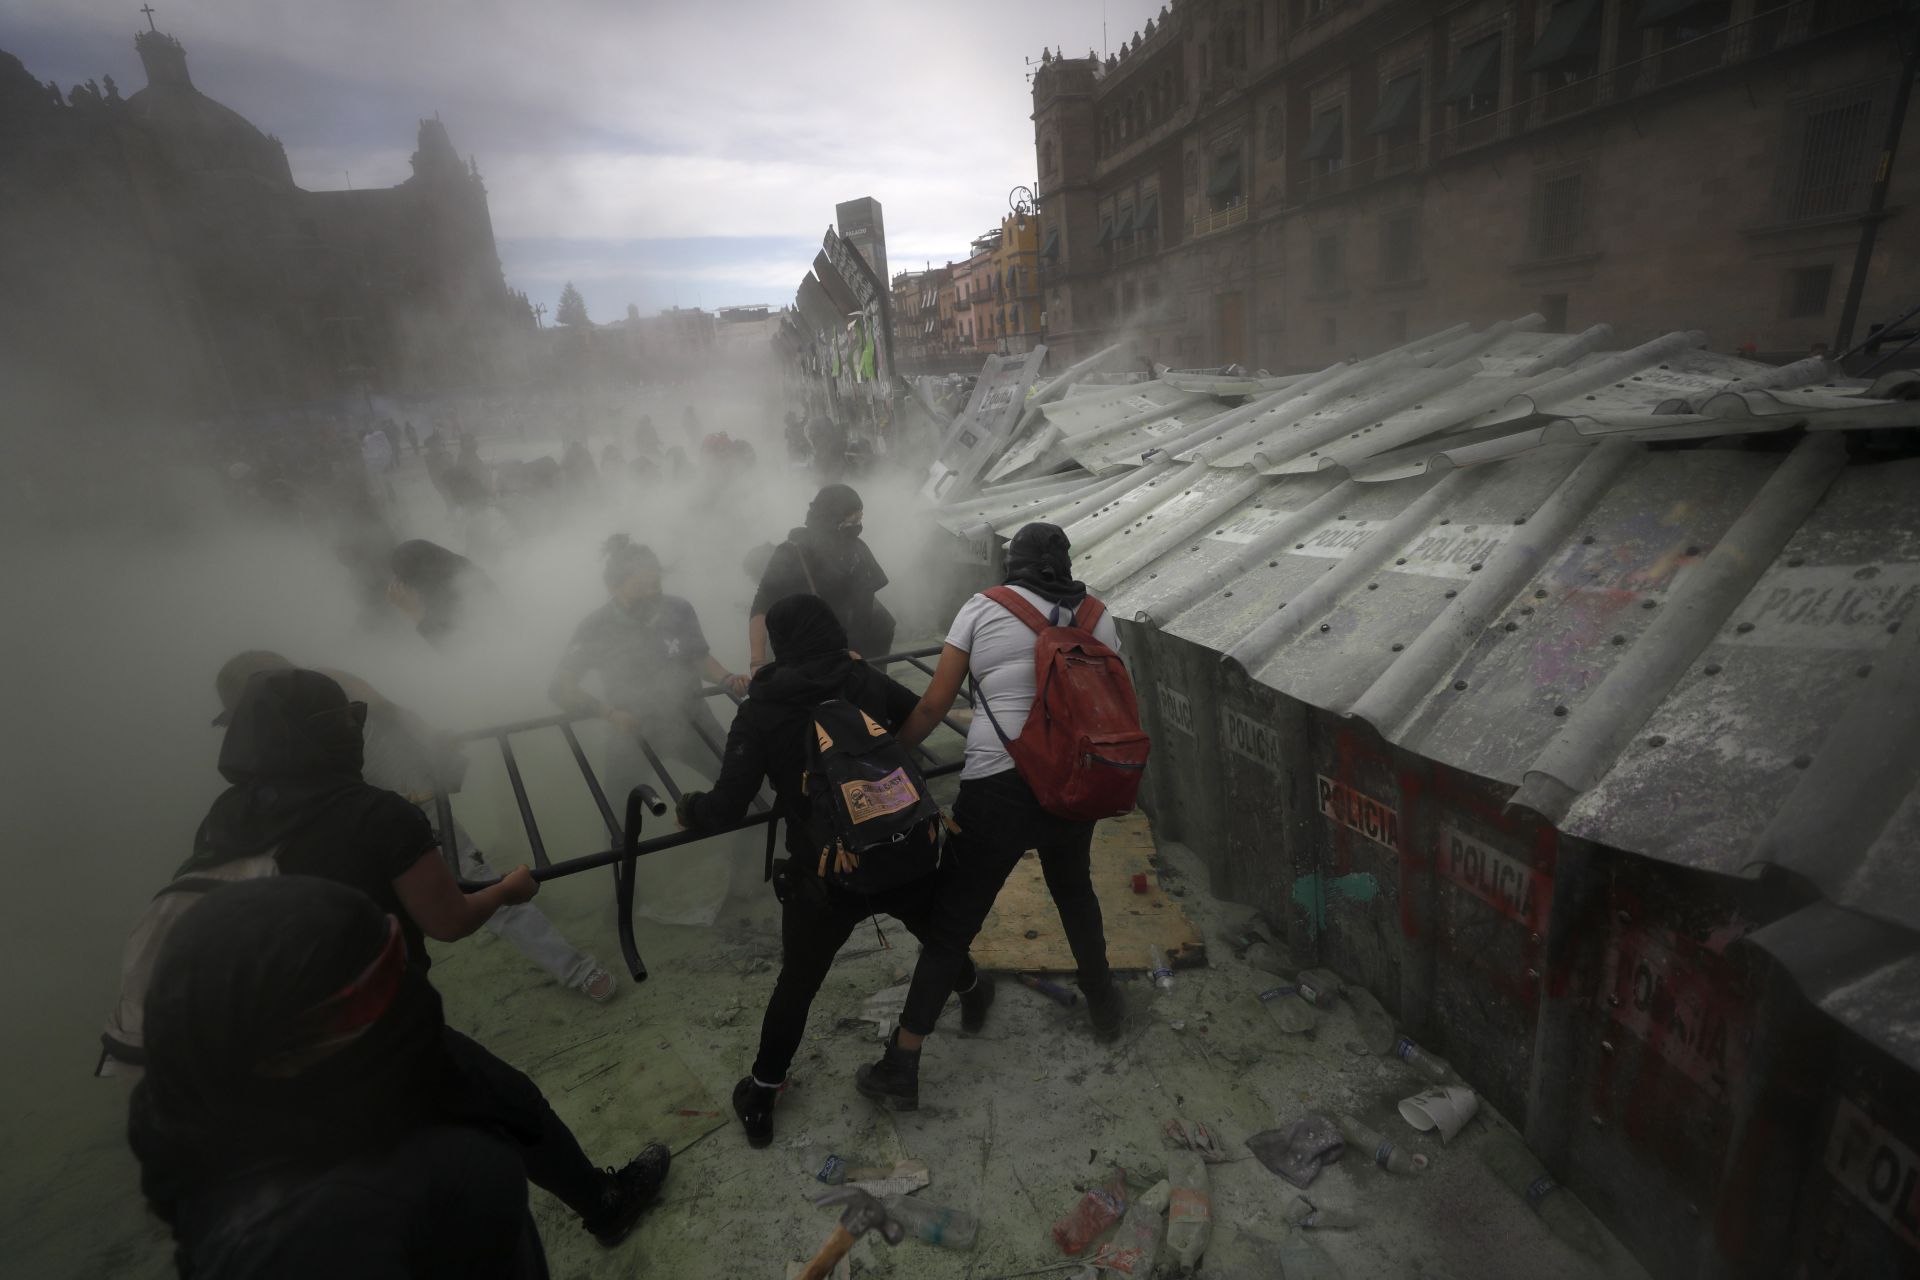 Демонстранти събориха част от огражденията около Националния дворец, което накара полицията да използва сълзотворен газ, за да ги разпръсне